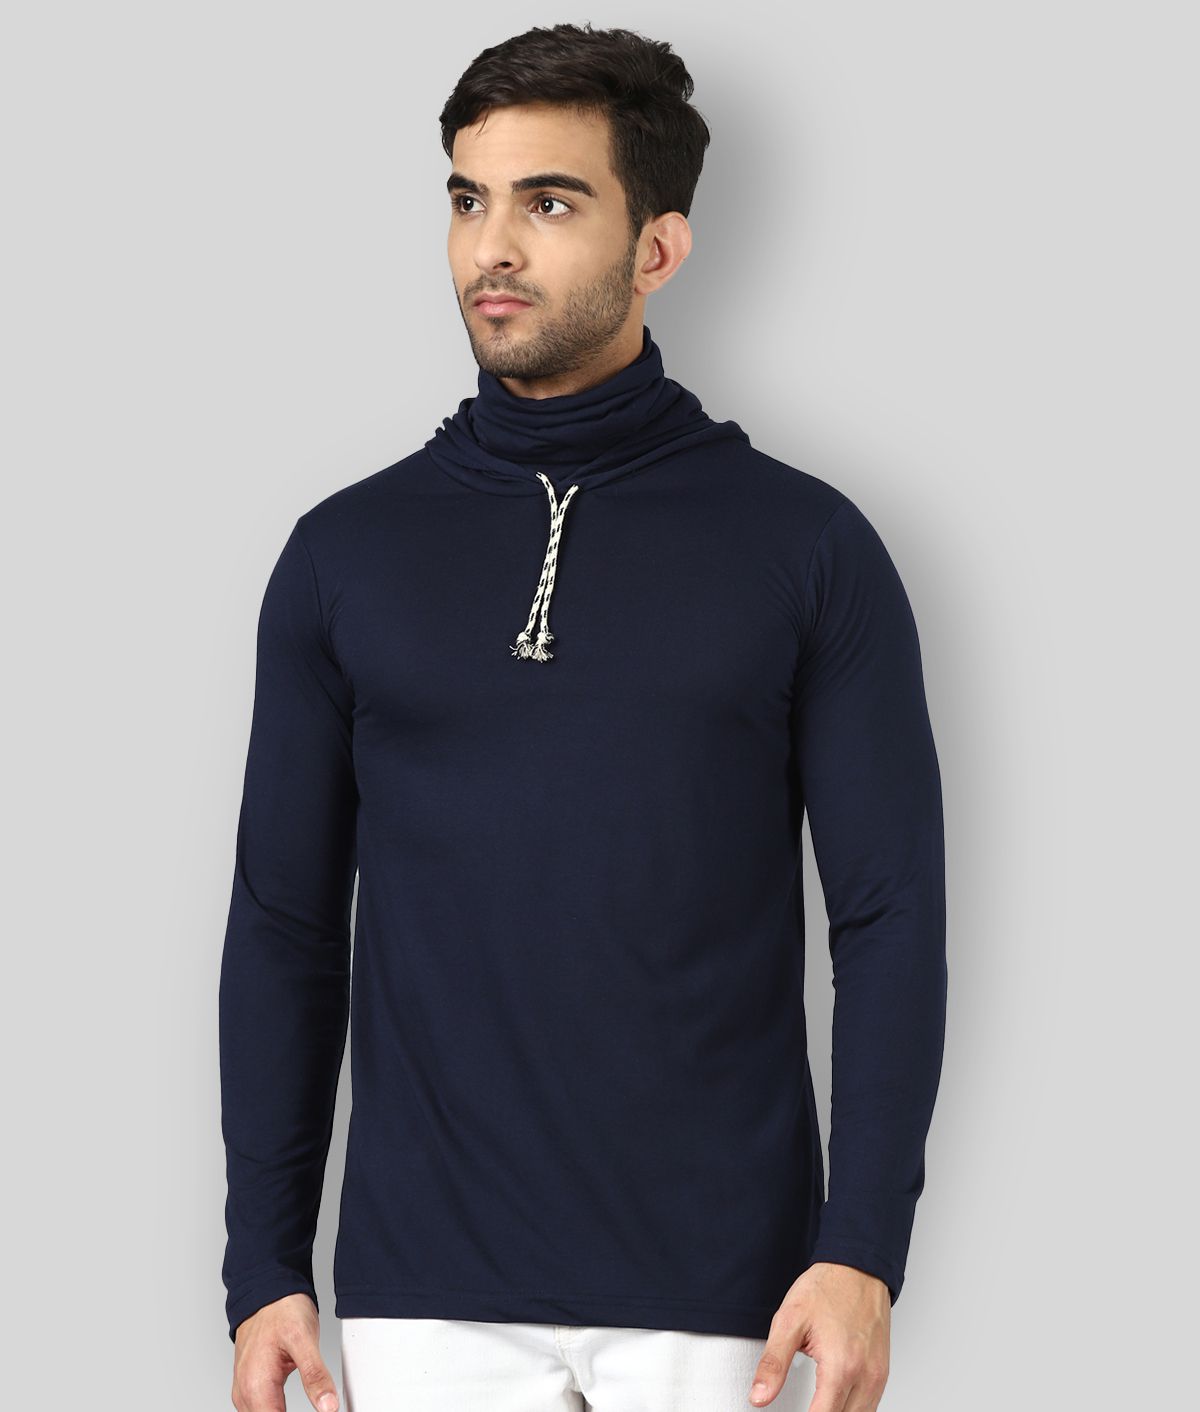 David Crew - Navy Blue Cotton Blend Regular Fit Men's T-Shirt ( Pack of 1 )